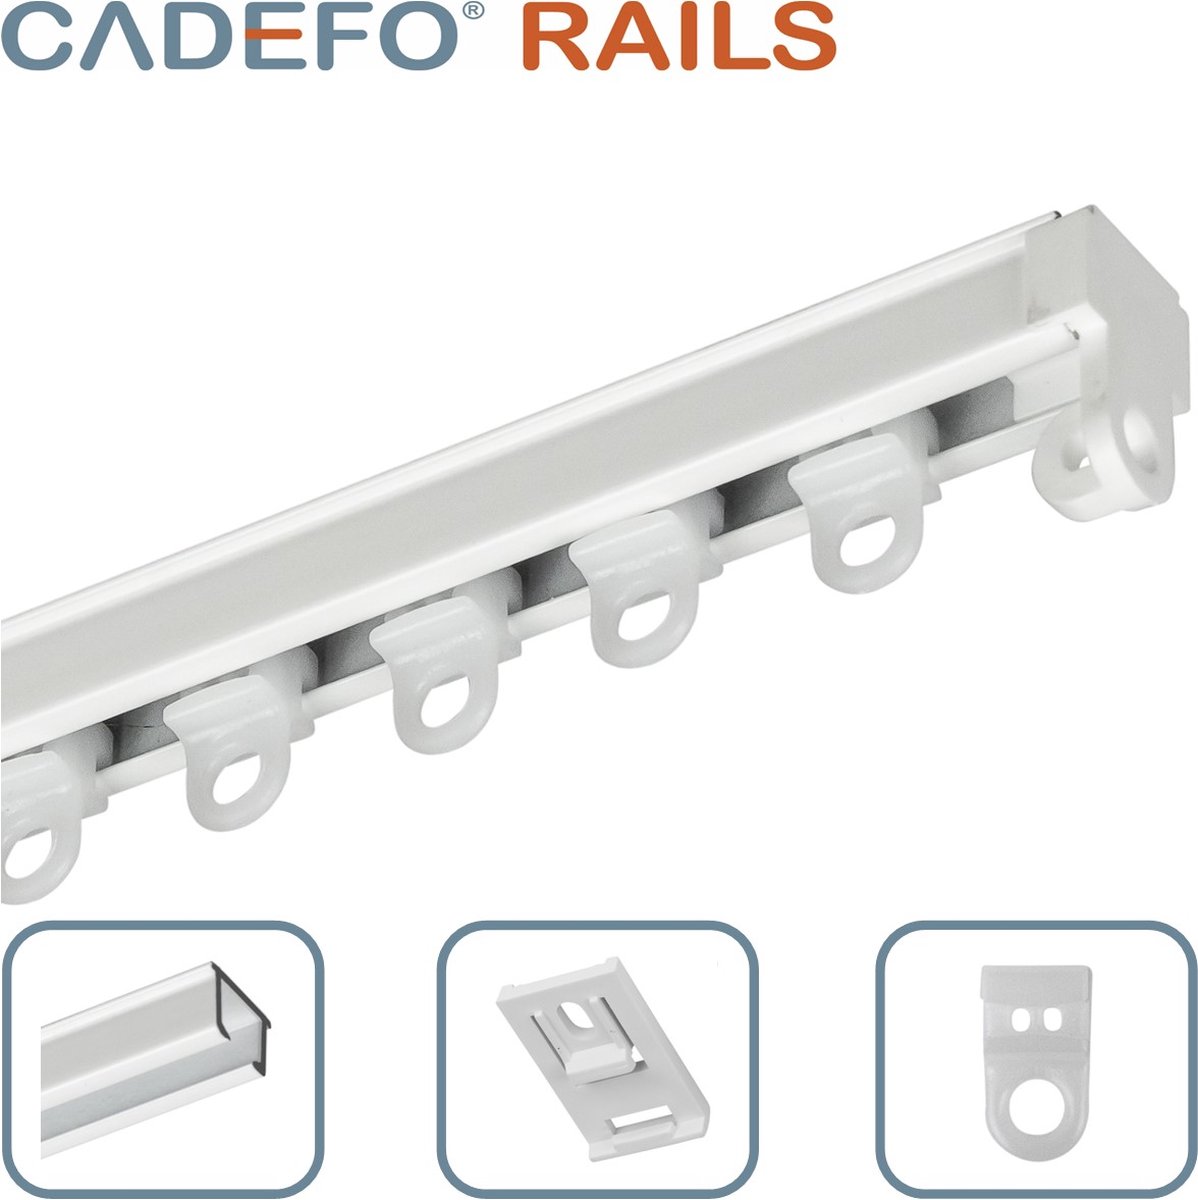 CADEFO RAILS (451 - 500 cm) Gordijnrails - Compleet op maat! - UIT 1 STUK - Leverbaar tot 6 meter - Plafondbevestiging - Lengte 451 cm